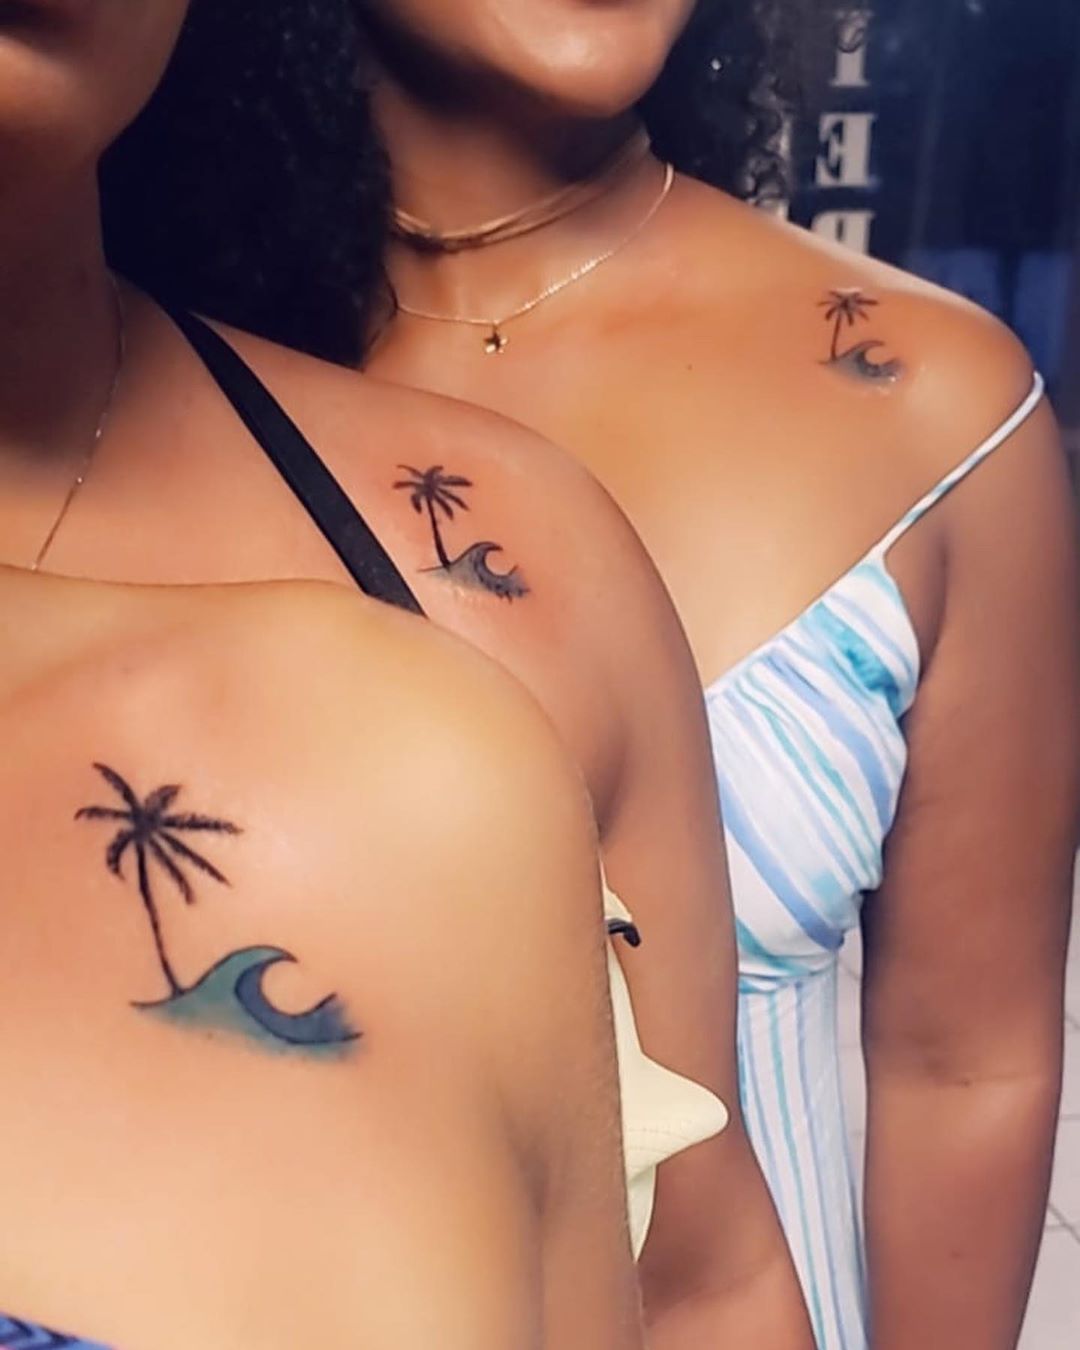 Pin by Nina Wells on best friend tattoos | Cousin tattoos, Friend tattoos, Friendship  tattoos